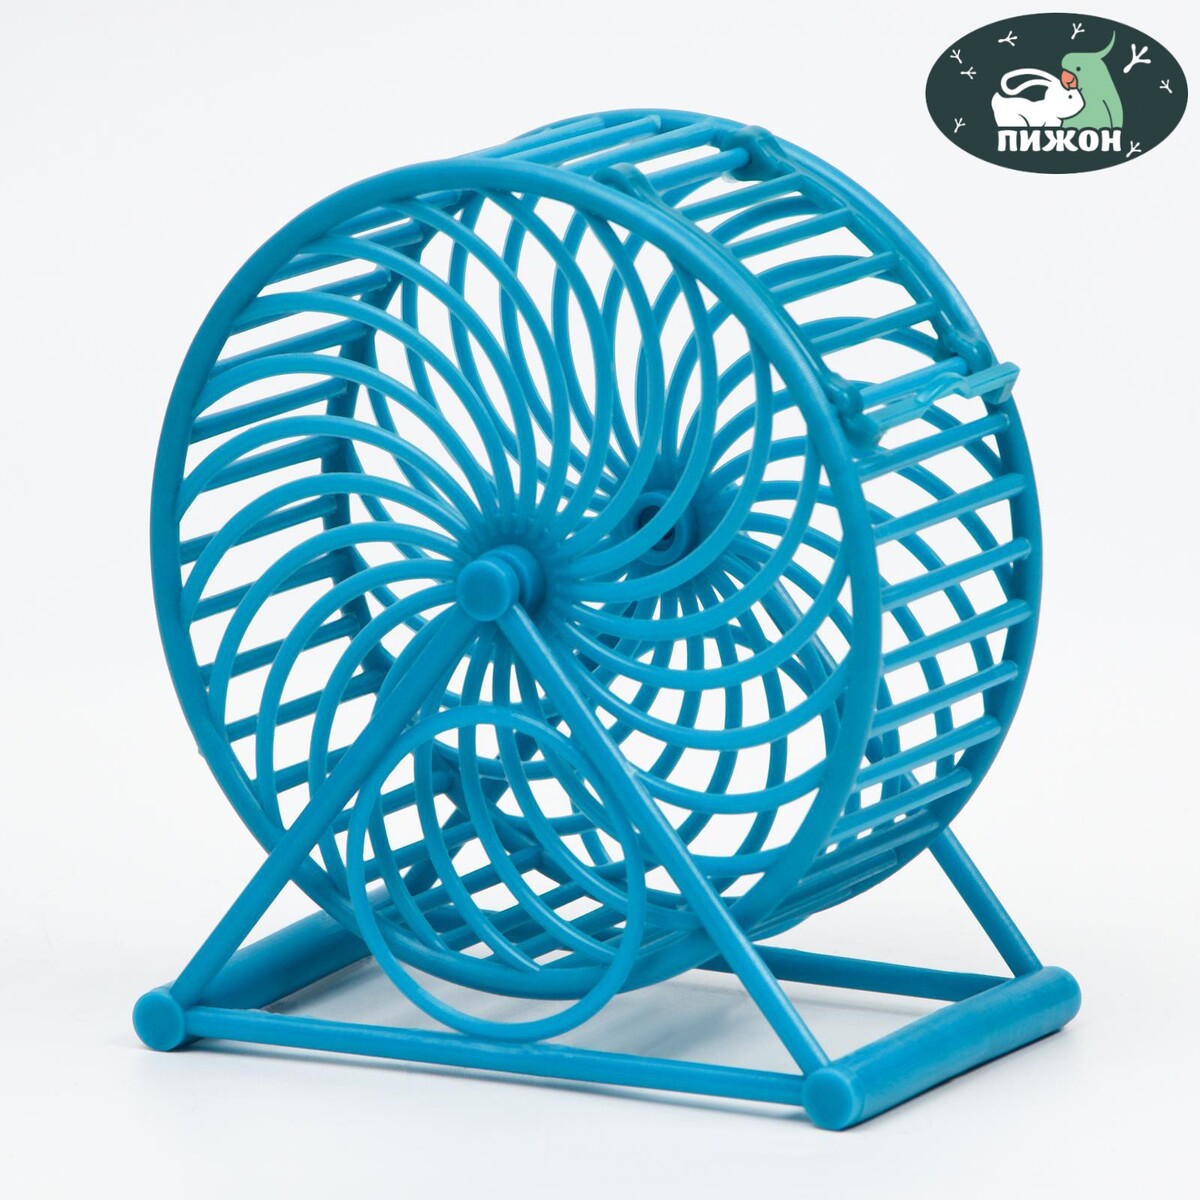 Колесо для грызунов на основании, пластик, 12,5 см, голубое колесо в колесе